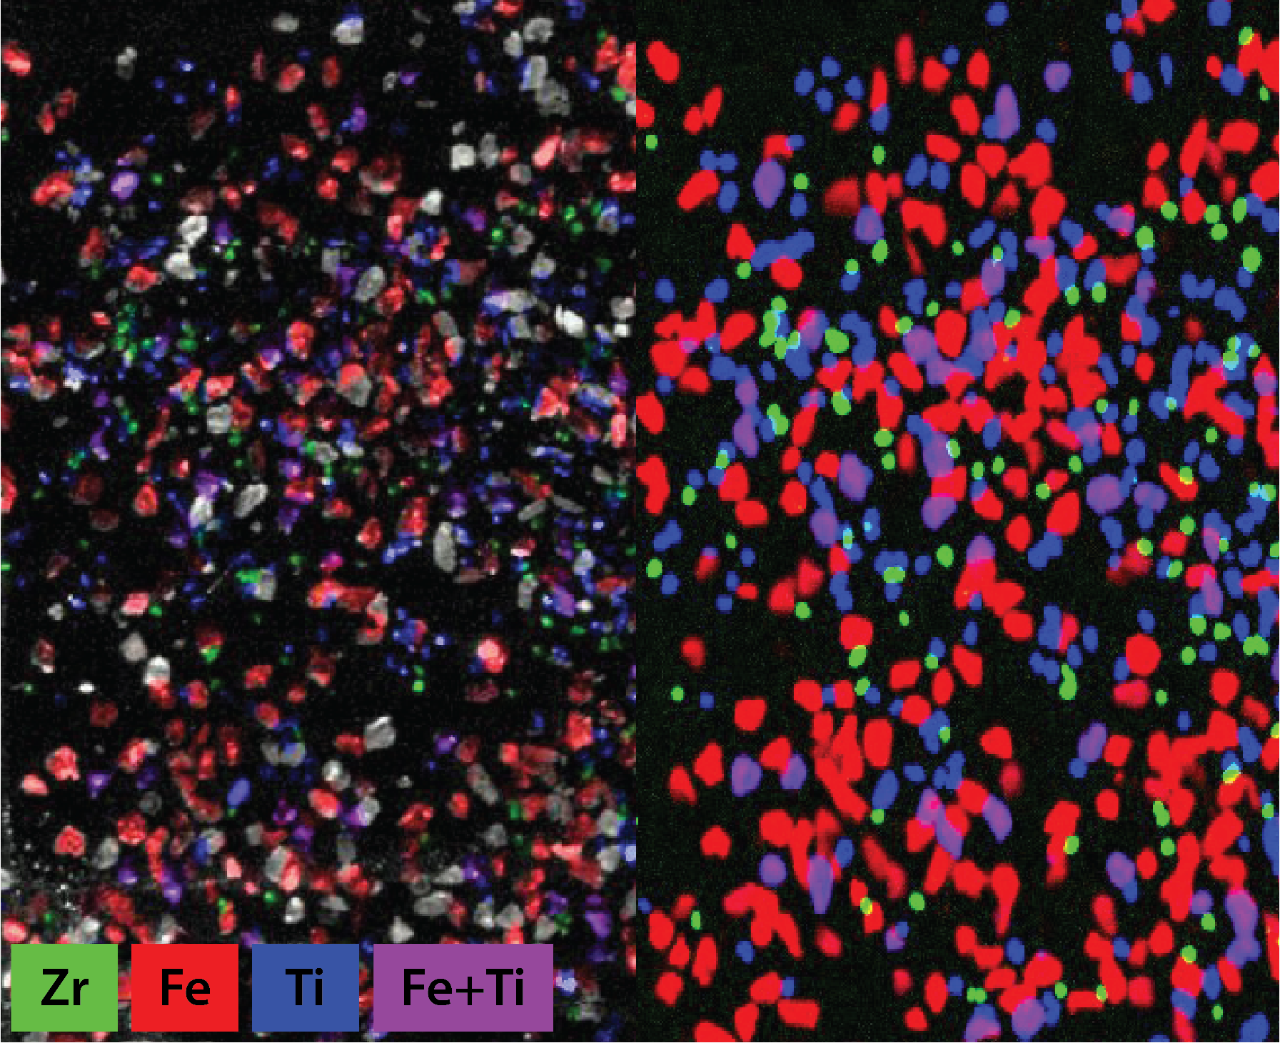 某重矿物精矿快速扫描微量xrf元素图。左:覆盖样本视频马赛克图像的元素;右:仅包含元素